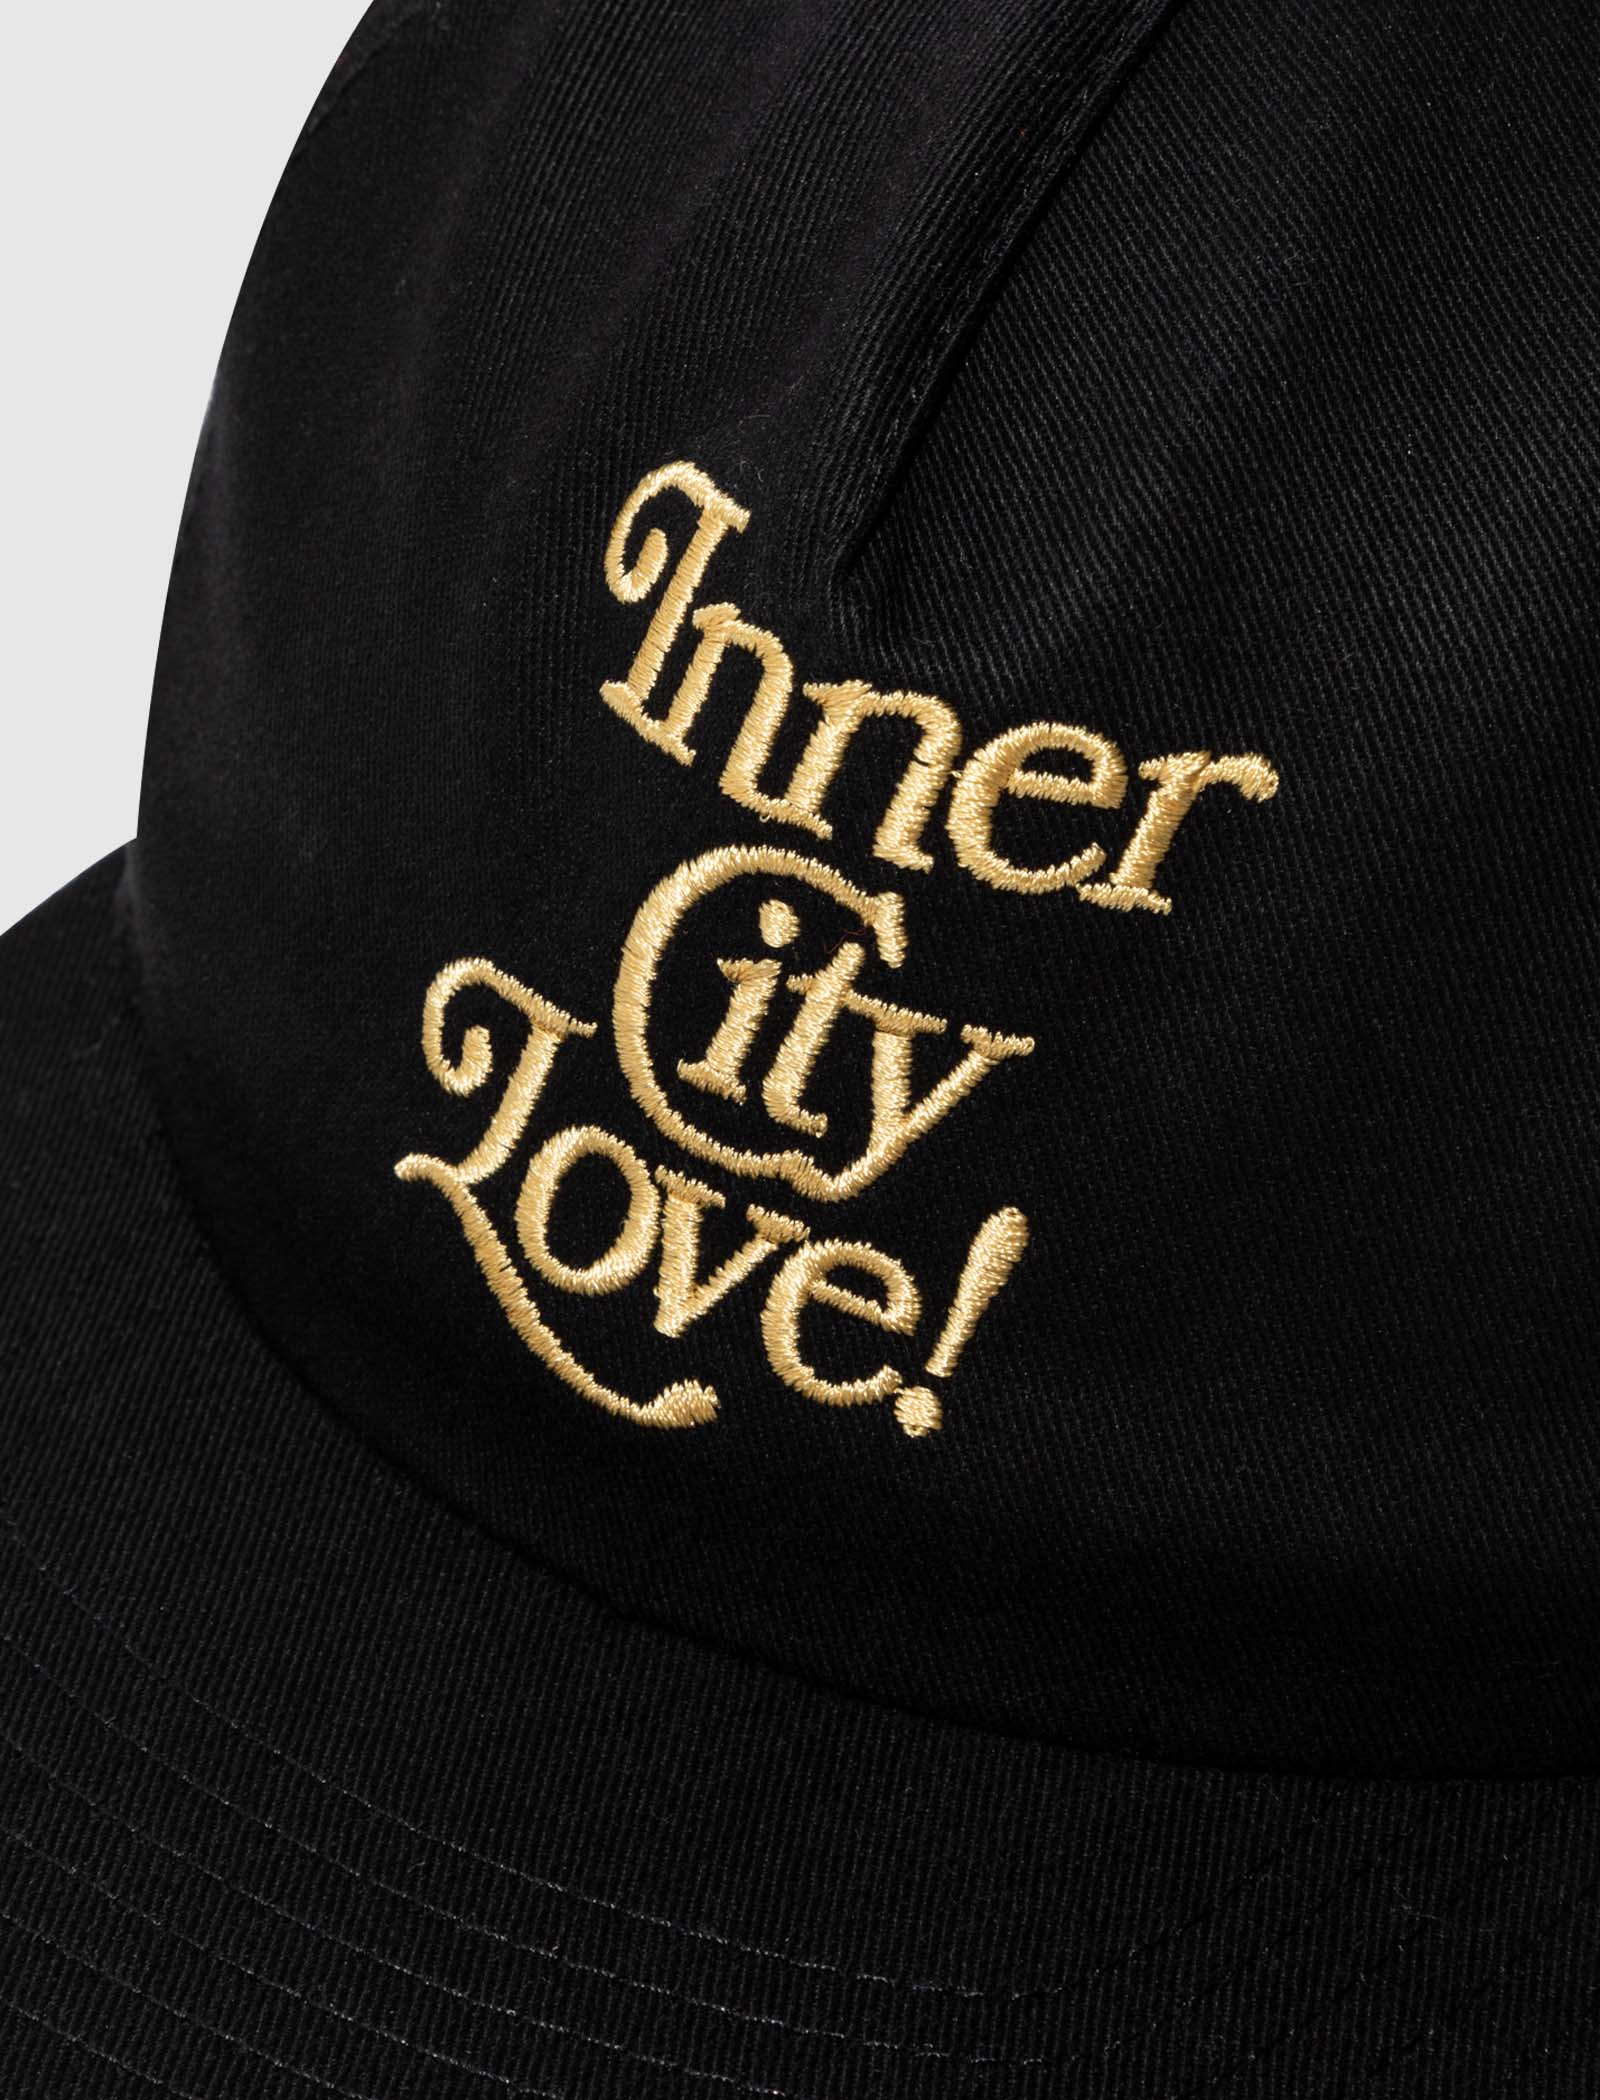 INNER CITY LOVE CAP